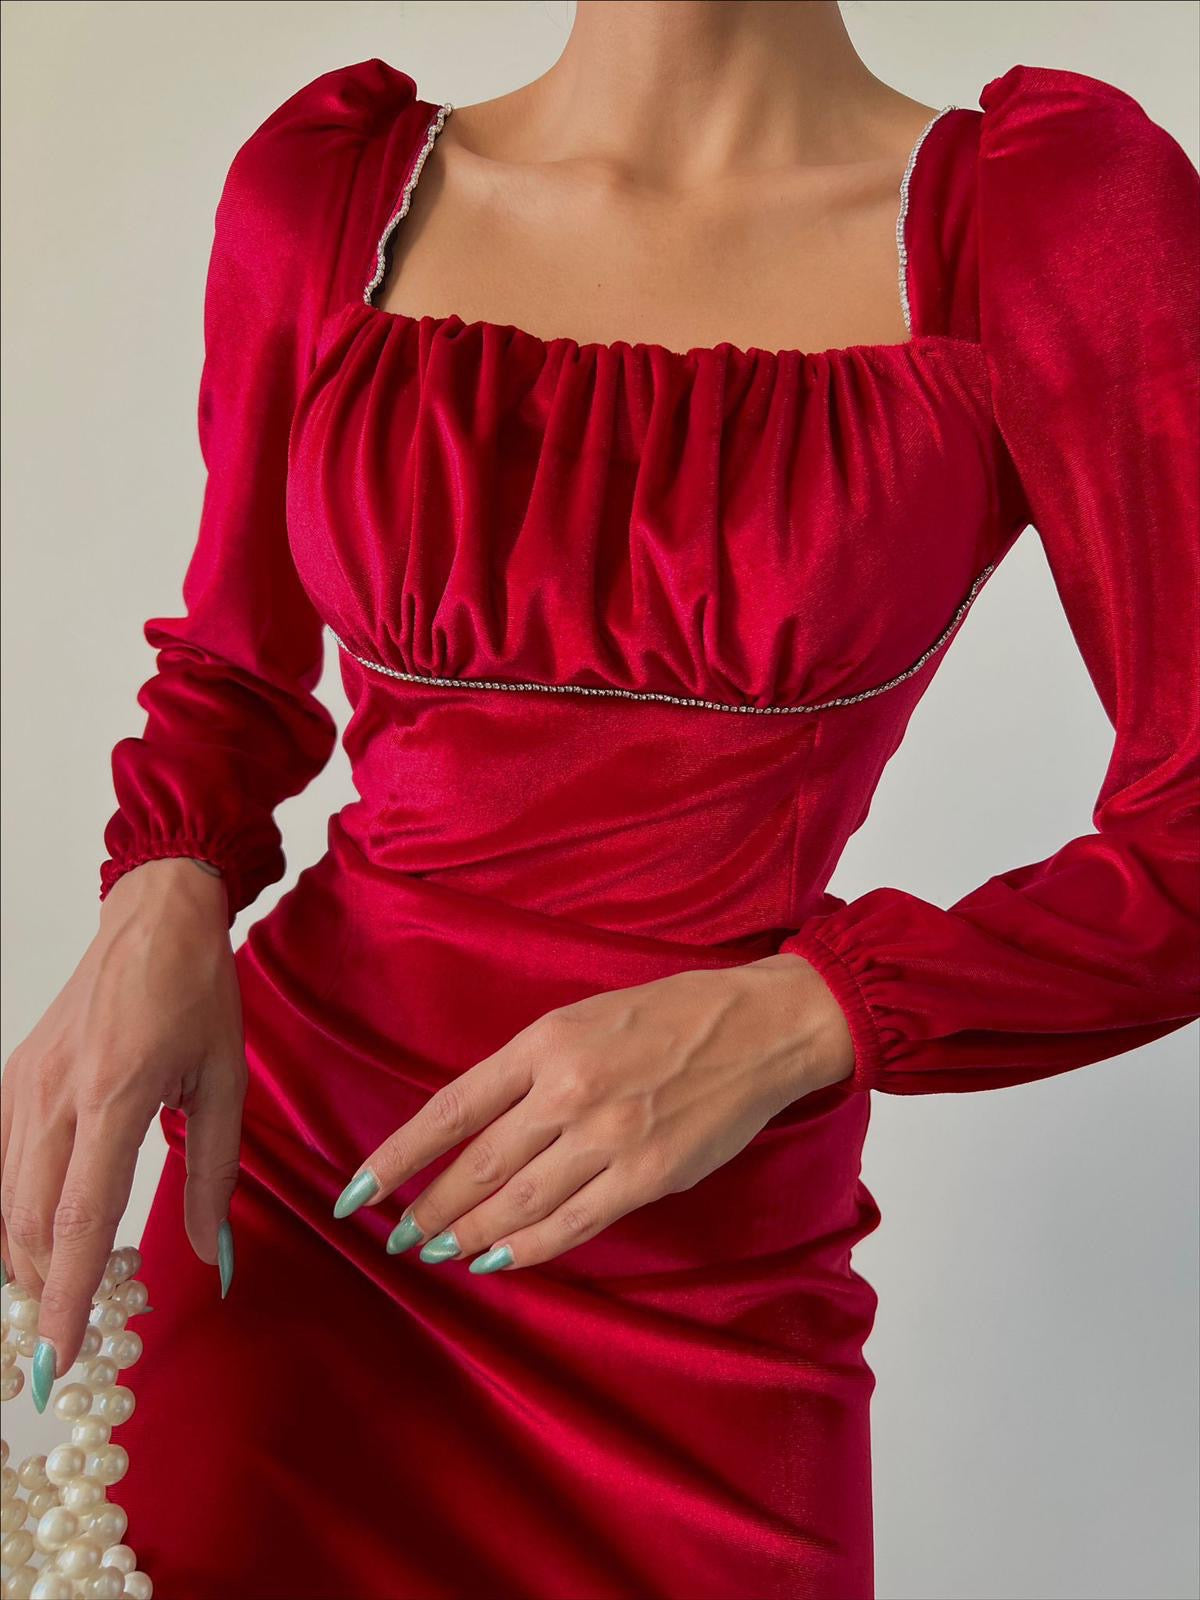 Дамска рокля VIVAN BURGUNDY  https://bvseductive.com/products/womans-s-dresses-vivan-burgundy  модерна къса рокля в цвят бордо модел с удобна кройка, който описва силуета с дълги, буфан ръкави и стилно, право деколте с удобно затваряне чрез цип отзад ....